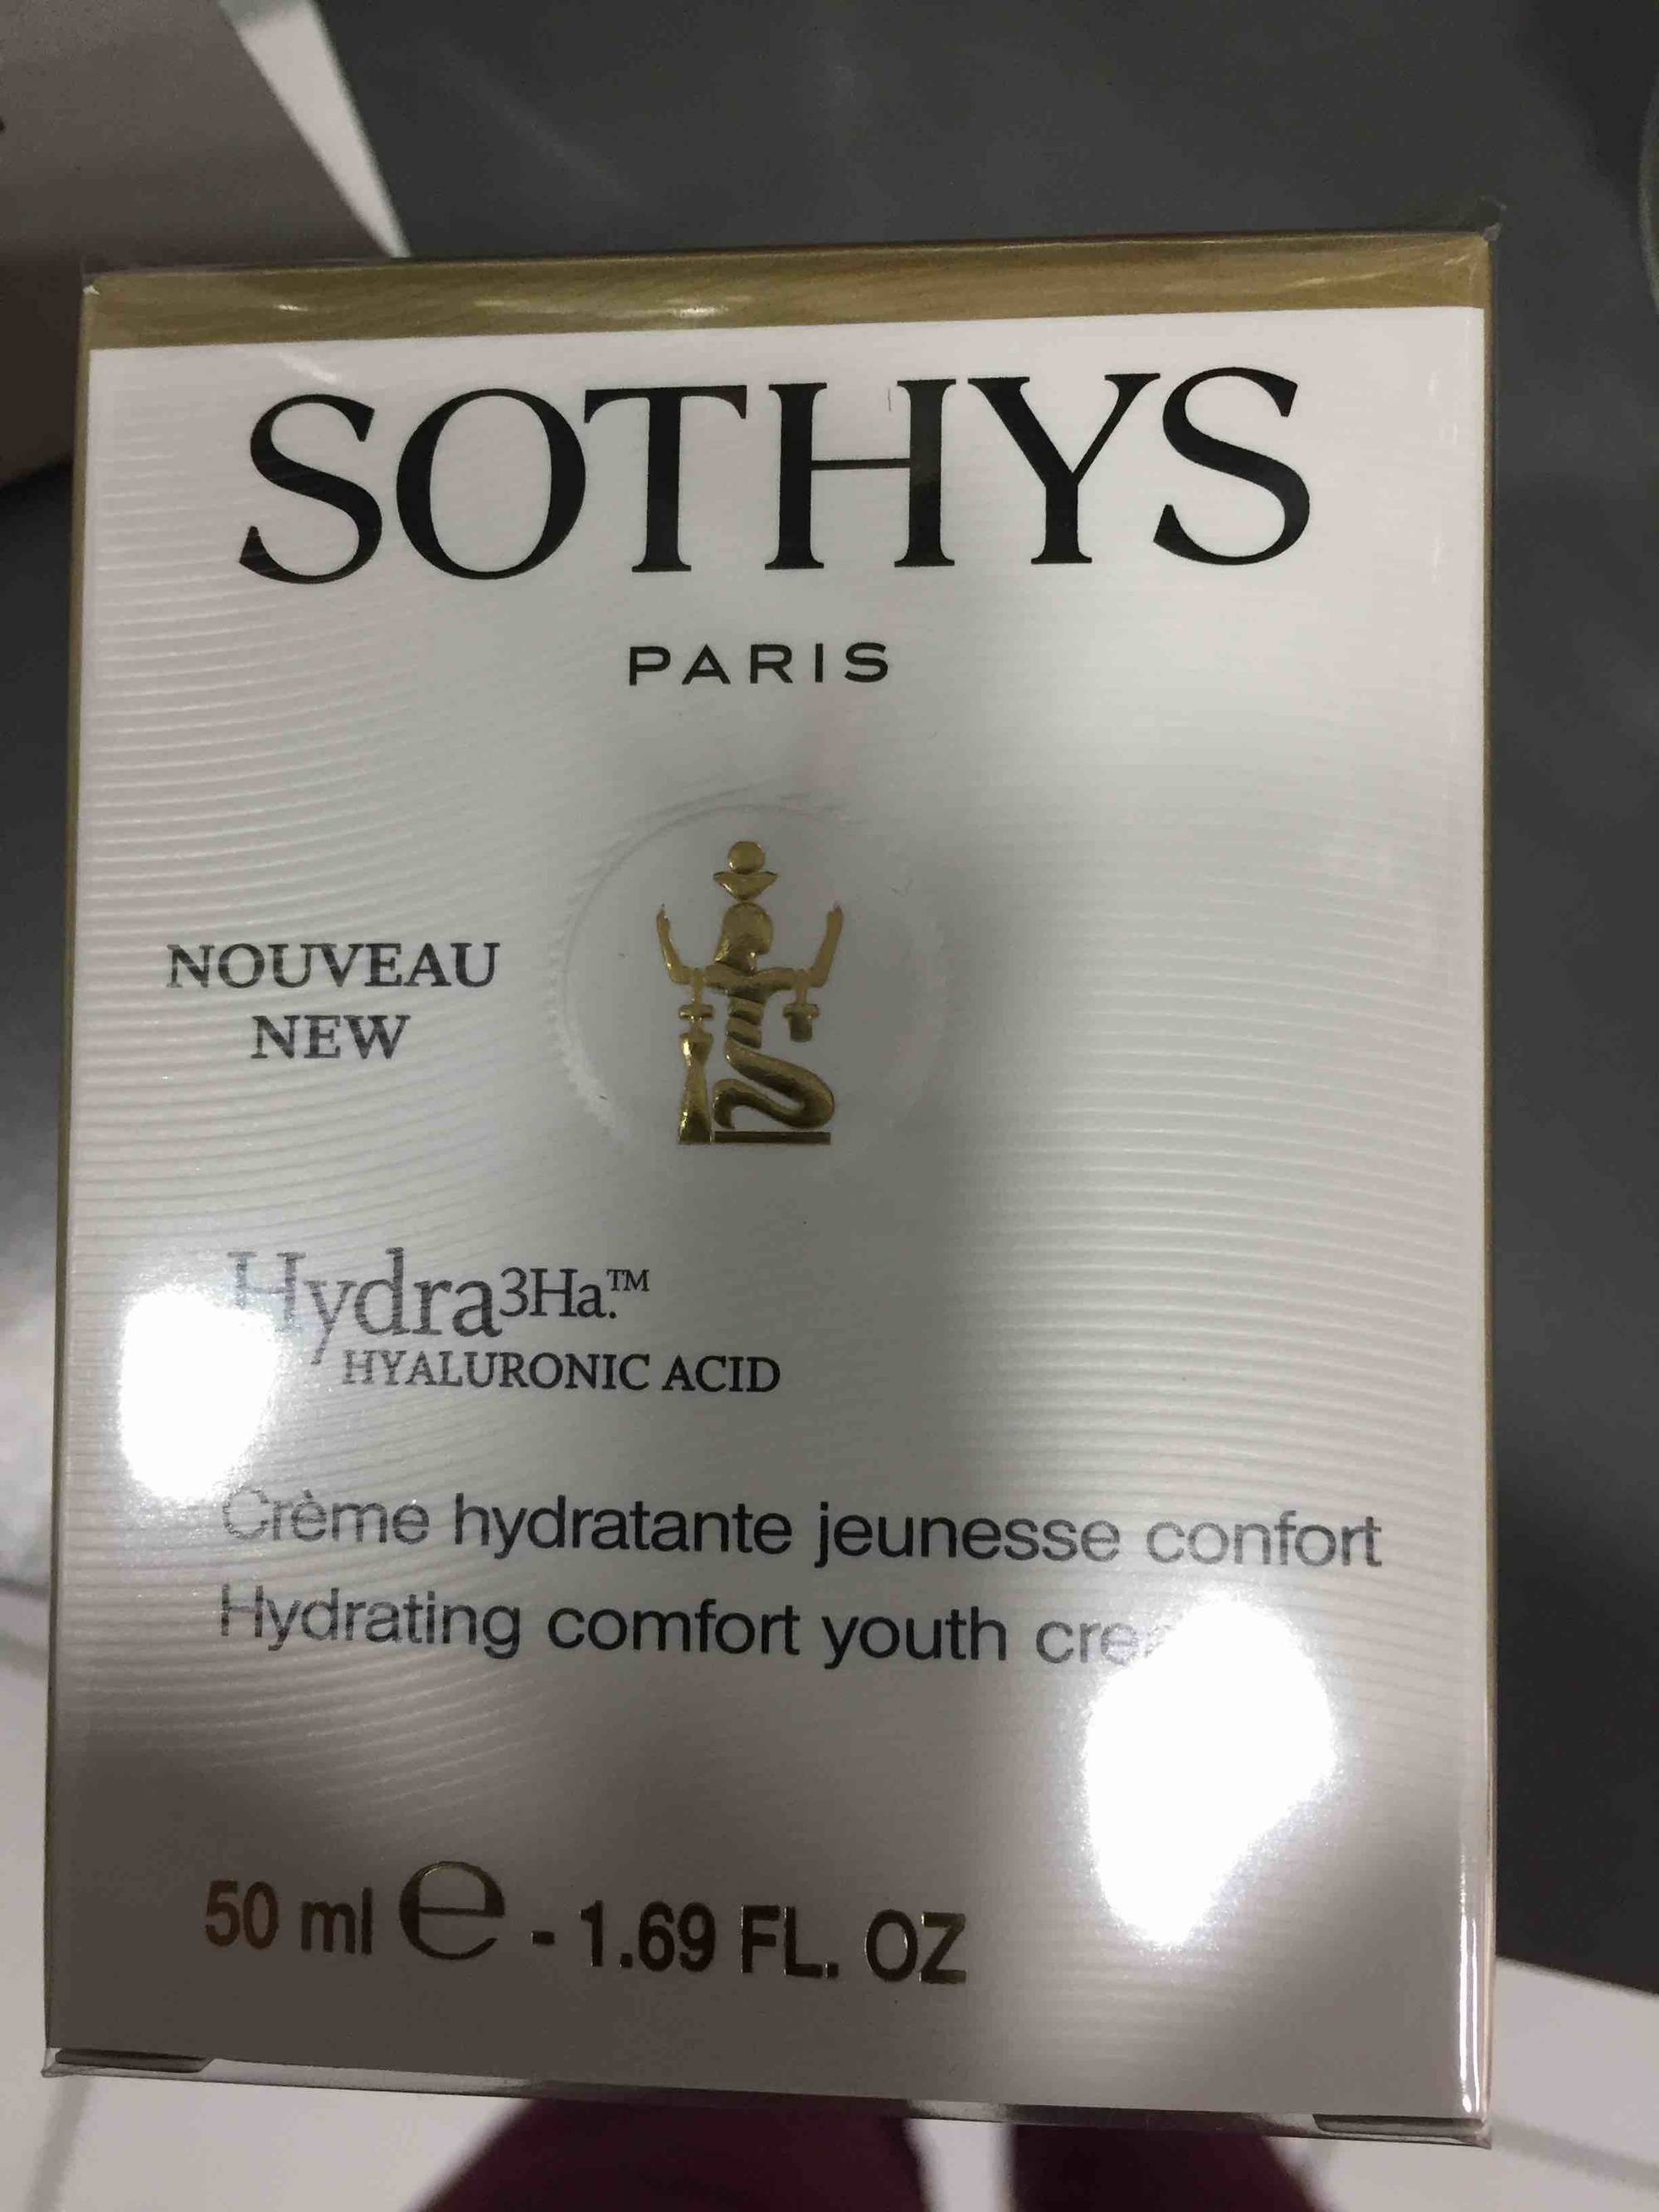 SOTHYS PARIS - Hydra 3Ha - Crème hydratante jeunesse confort